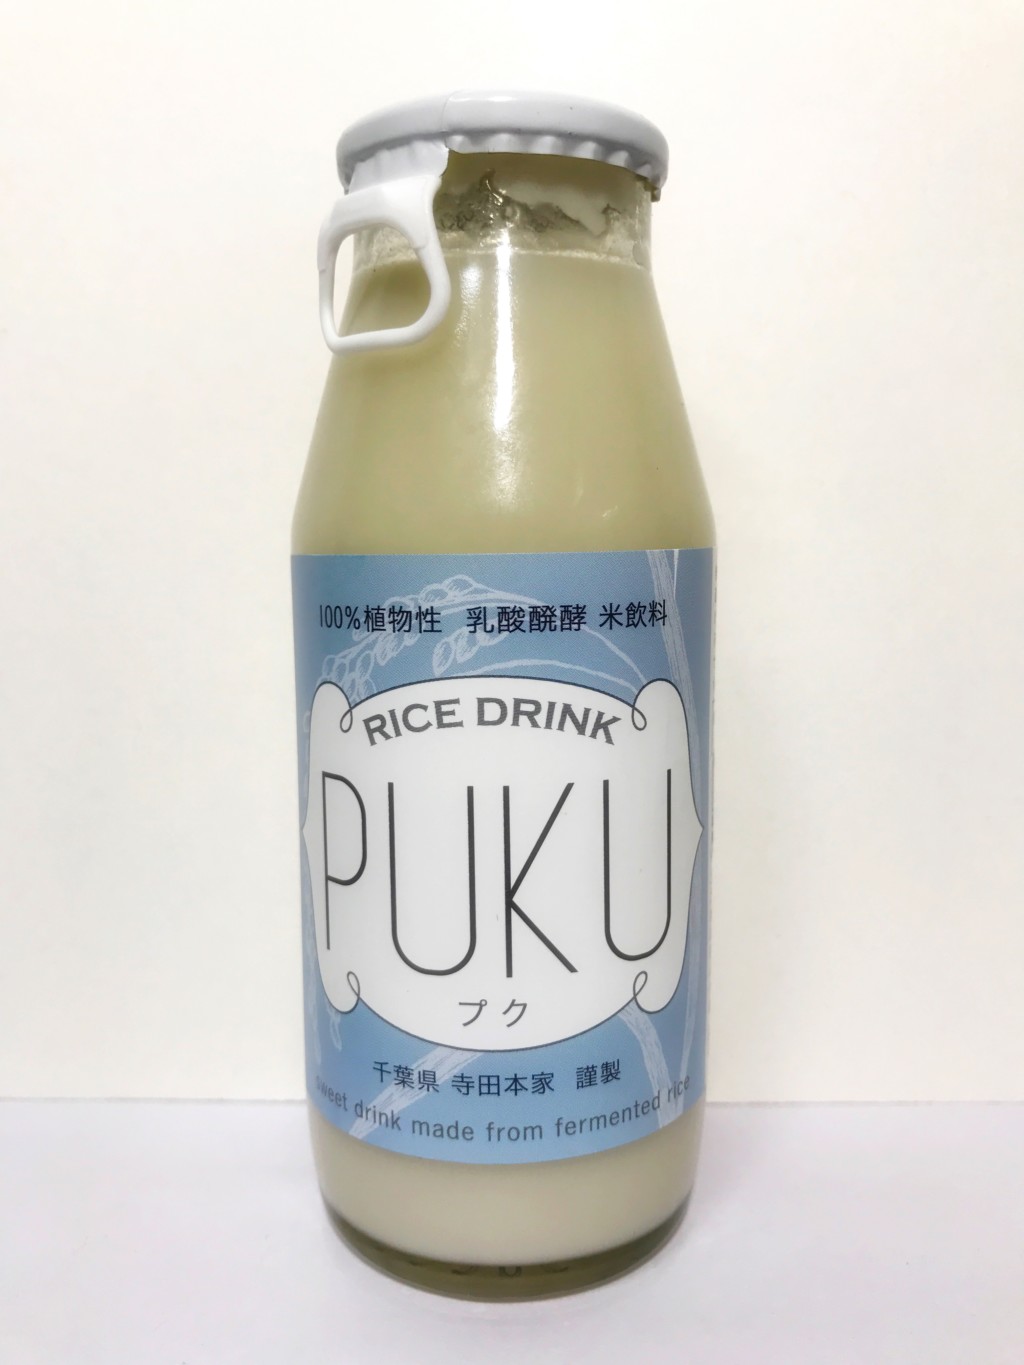 ナチュラル・ハーモニーの乳酸発酵した米麹甘酒『PUKU』